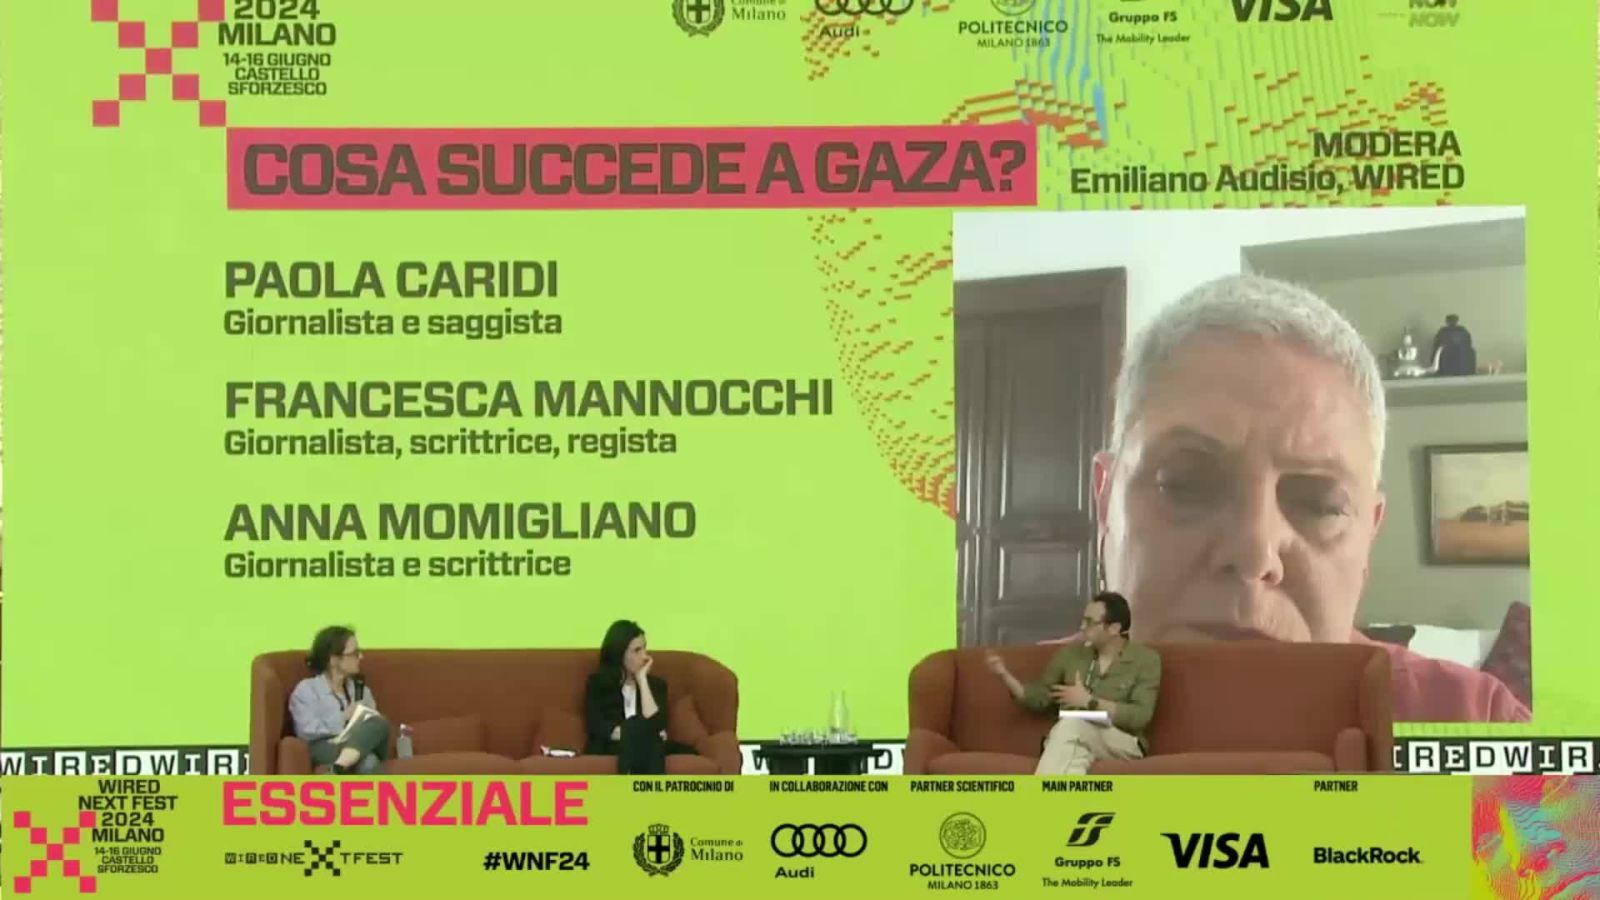 Caridi, Mannocchi e Momigliano, a Wired Next Fest 2024 il racconto di cosa succede a Gaza